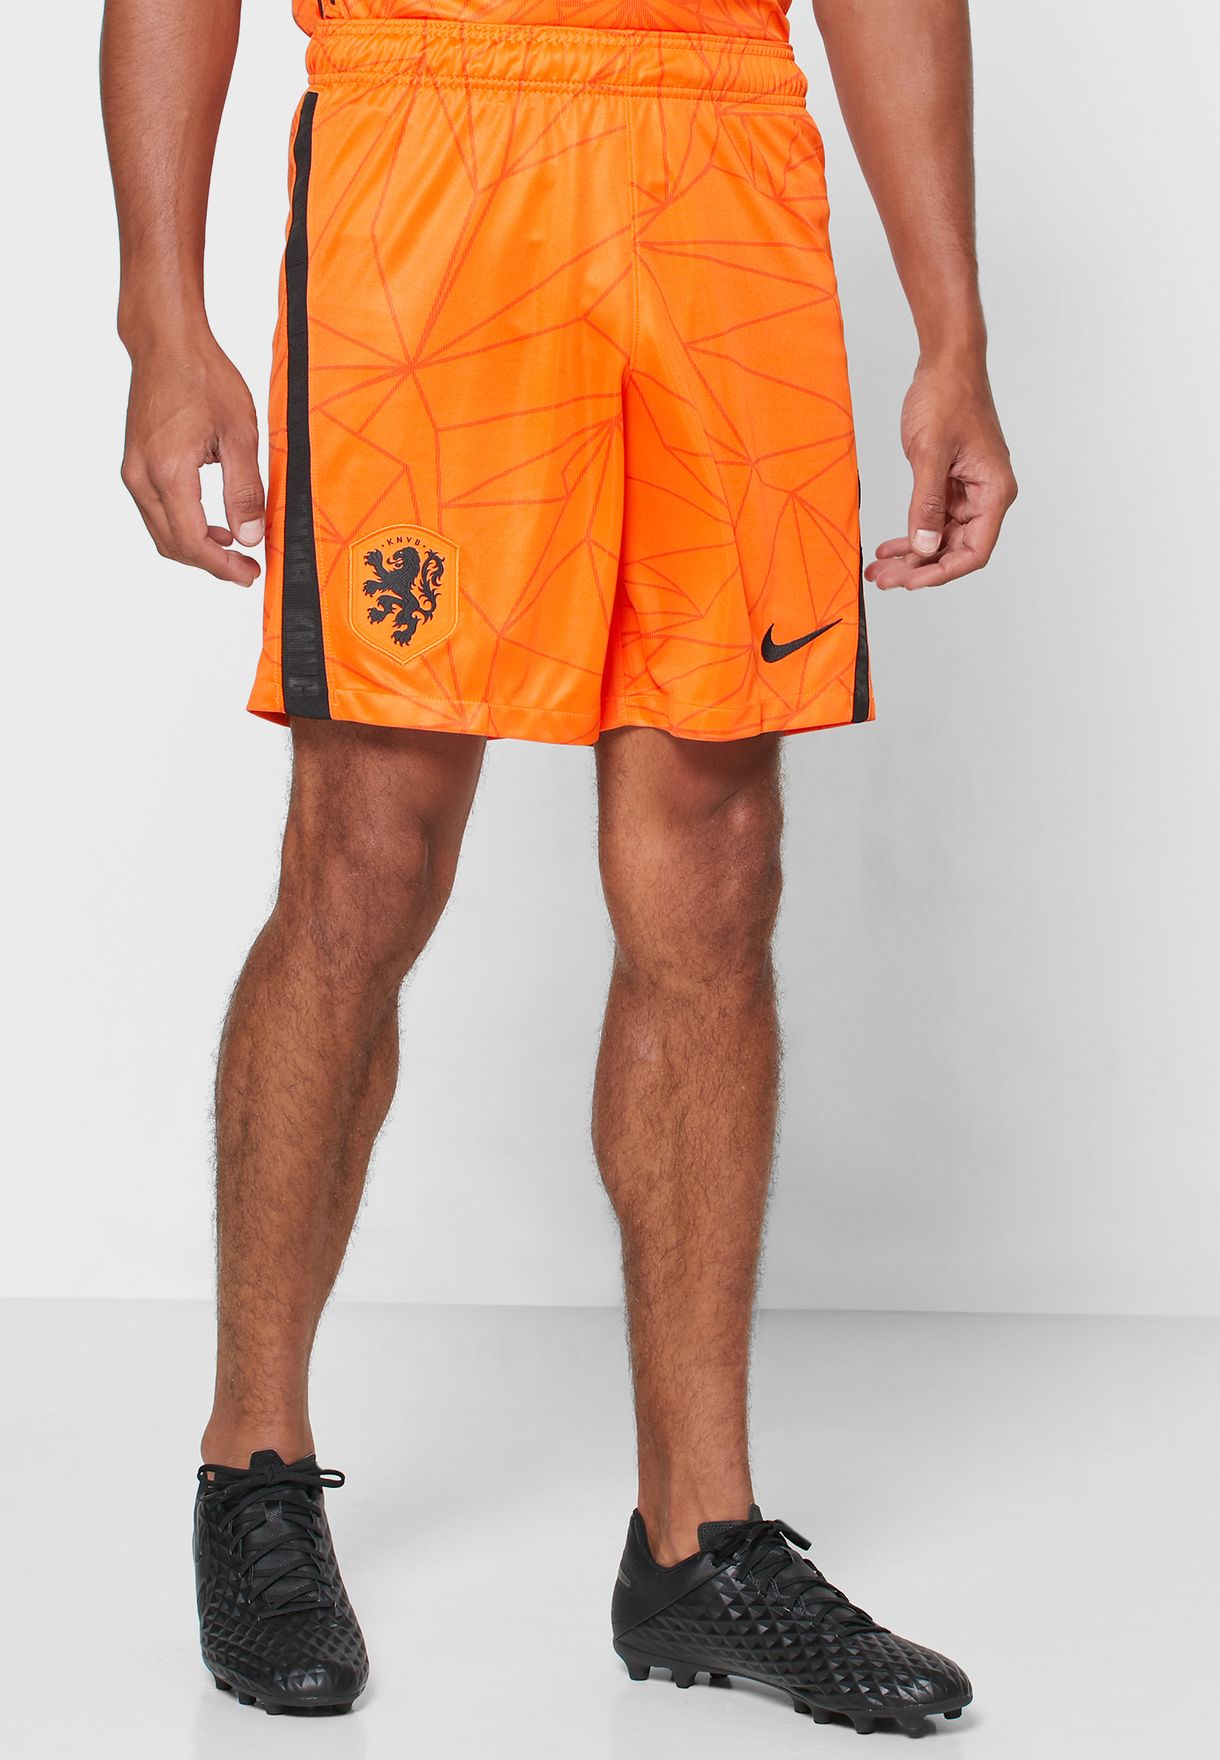 nike orange shorts mens